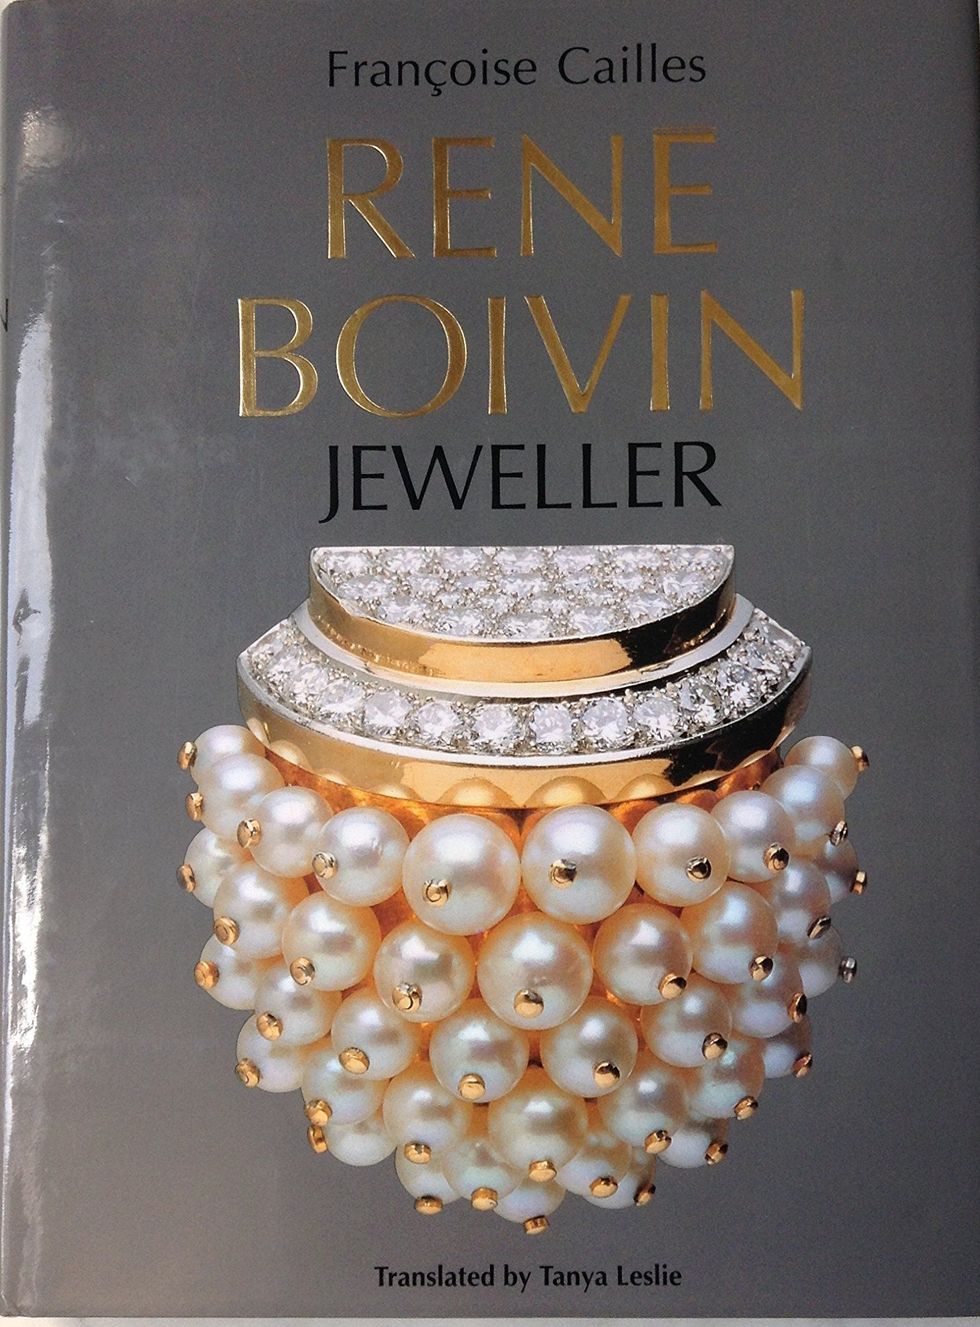 Rene Boivin: Jeweller